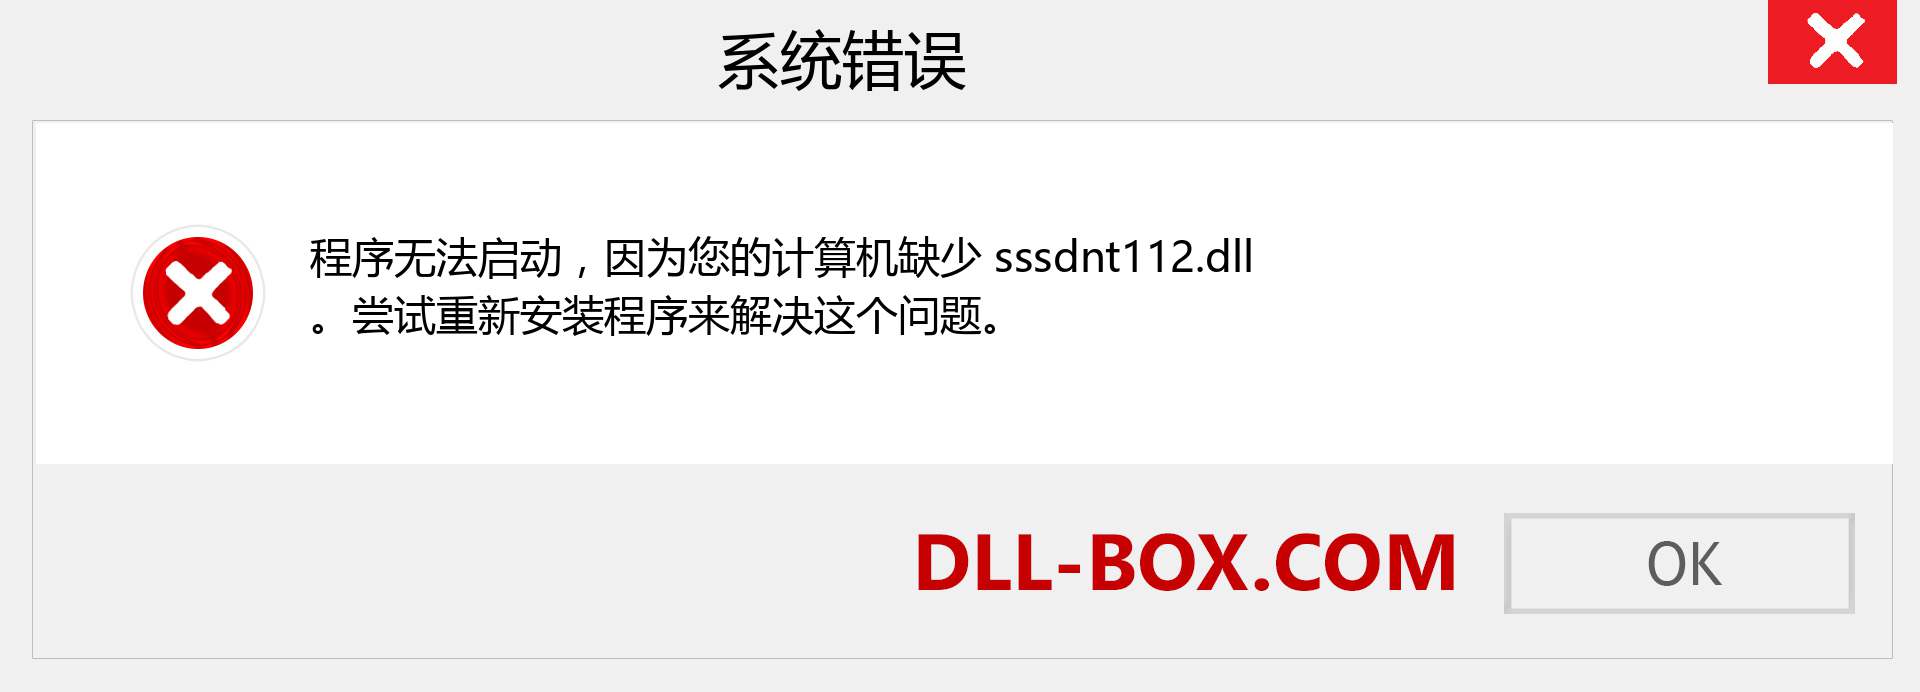 sssdnt112.dll 文件丢失？。 适用于 Windows 7、8、10 的下载 - 修复 Windows、照片、图像上的 sssdnt112 dll 丢失错误